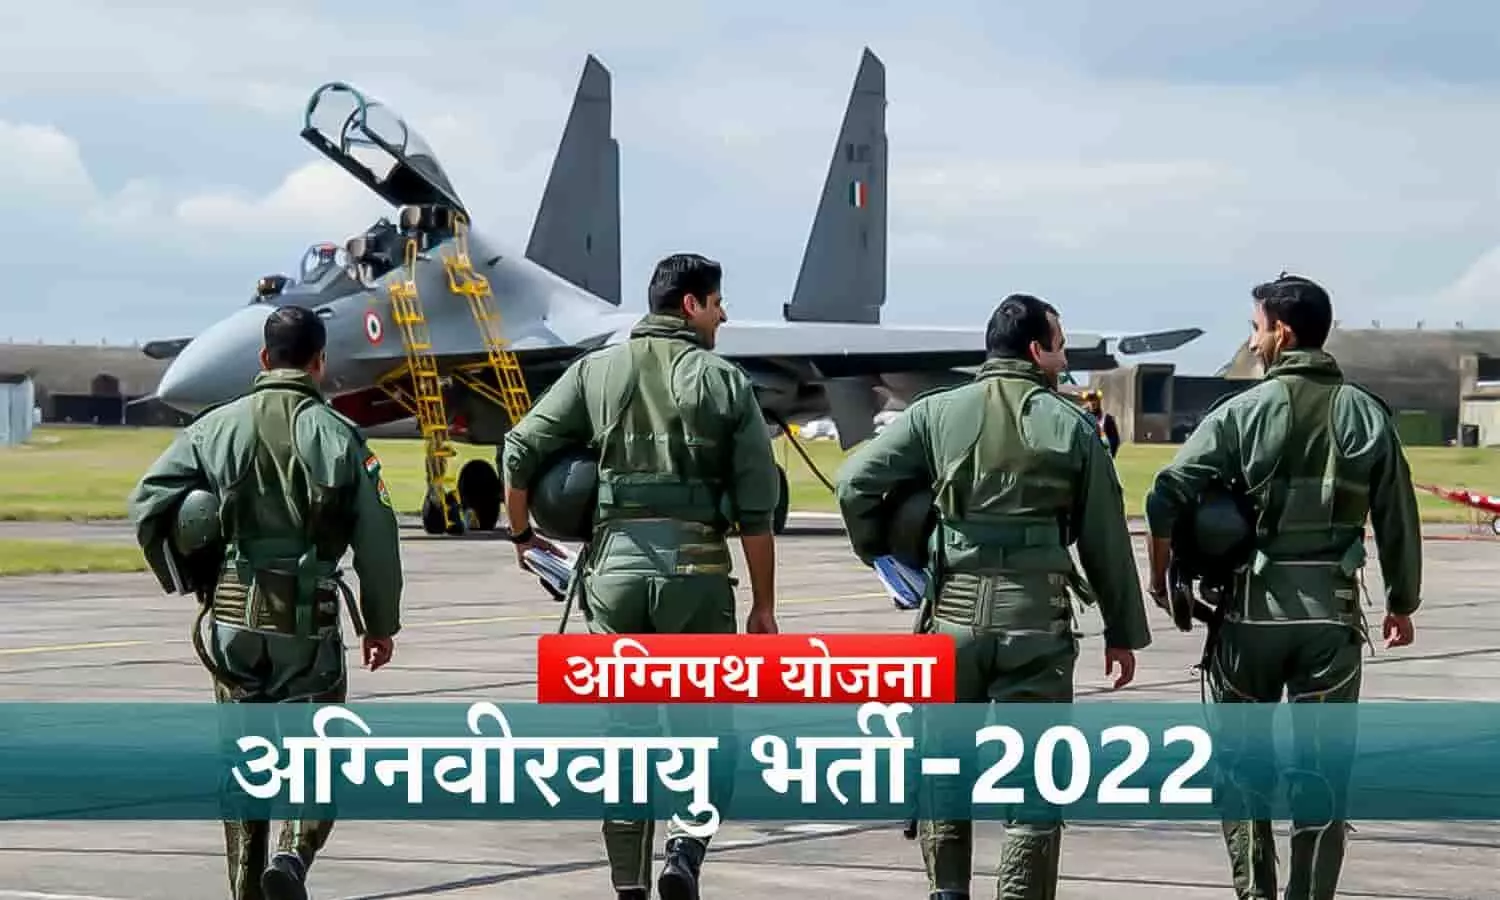 IAF Agniveer Exam: भारतीय वायुसेना के लिए लिखित परीक्षा आज से शुरू, 4 साल के लिए होगी अग्निवीरवायु की भर्ती